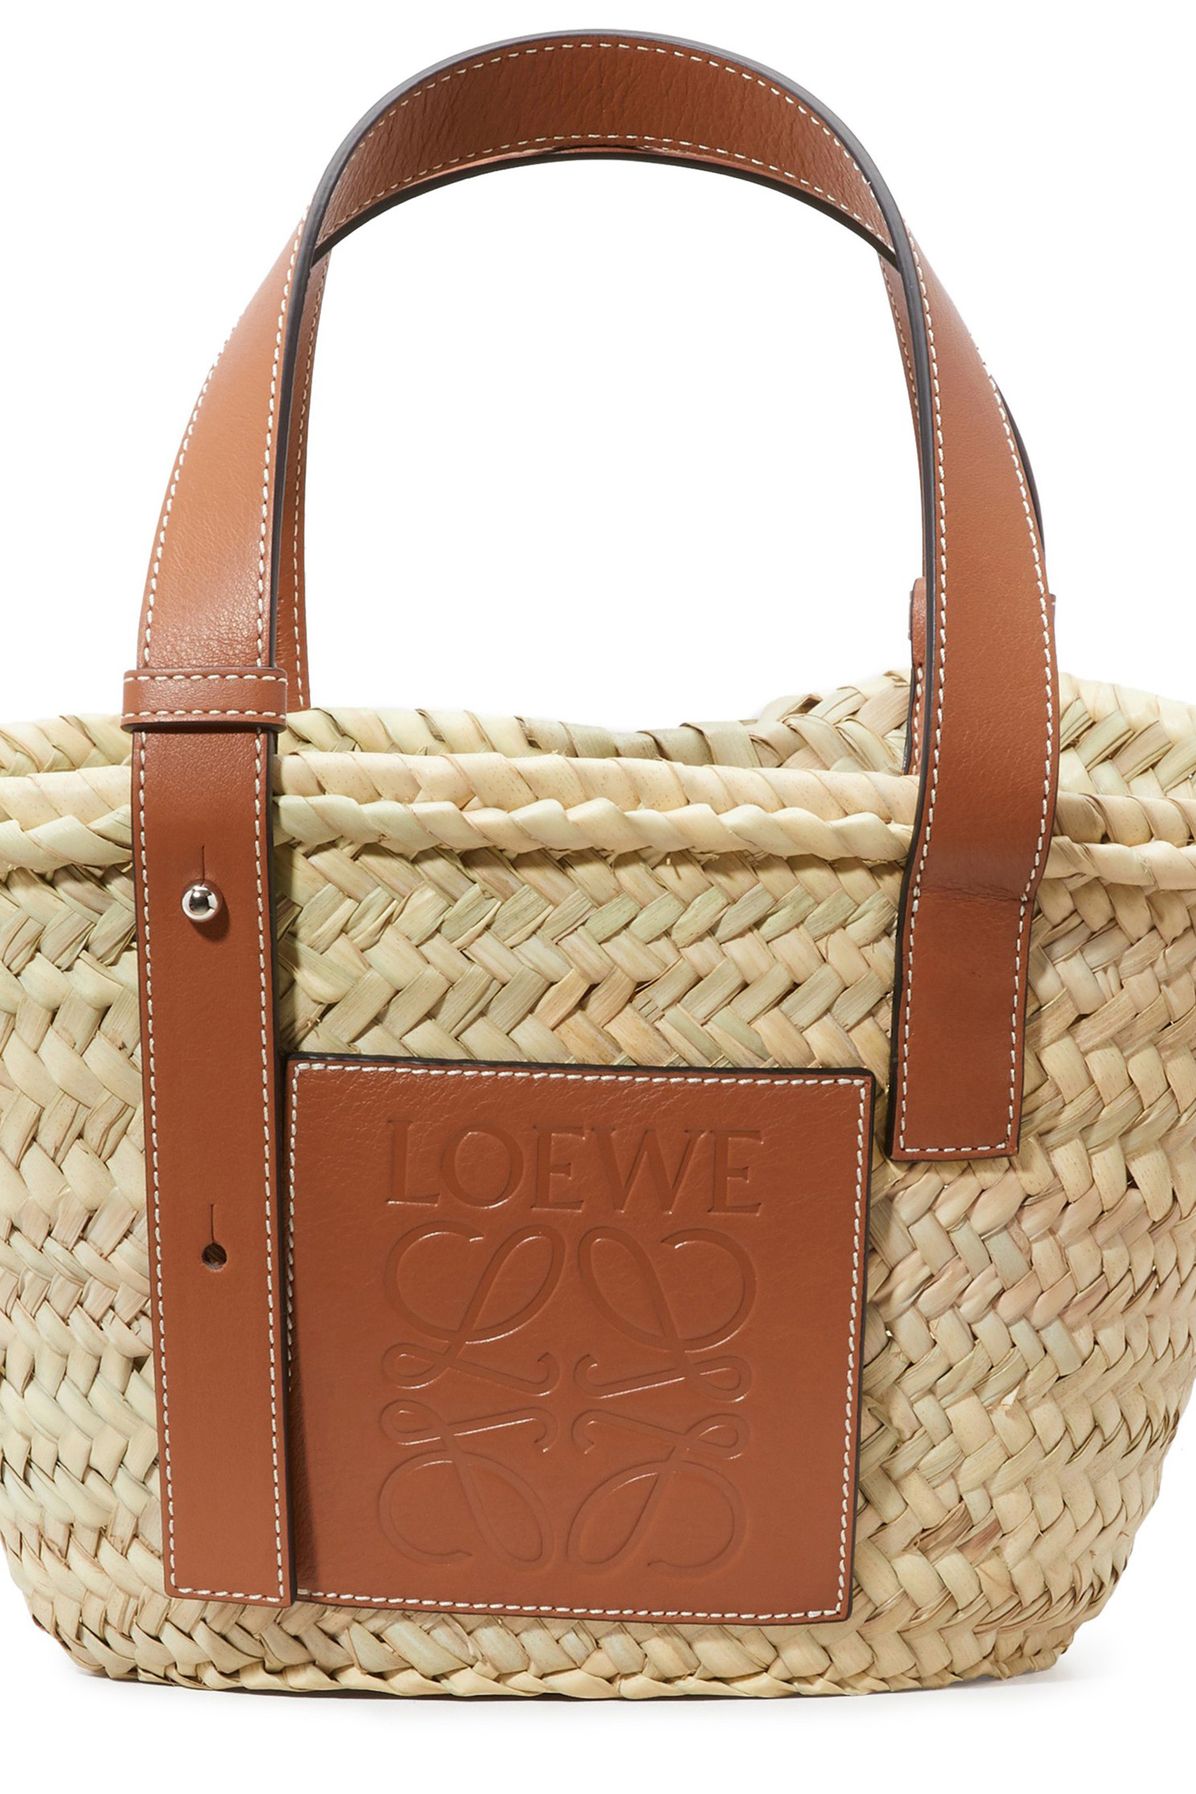 Loewe Basket small bag